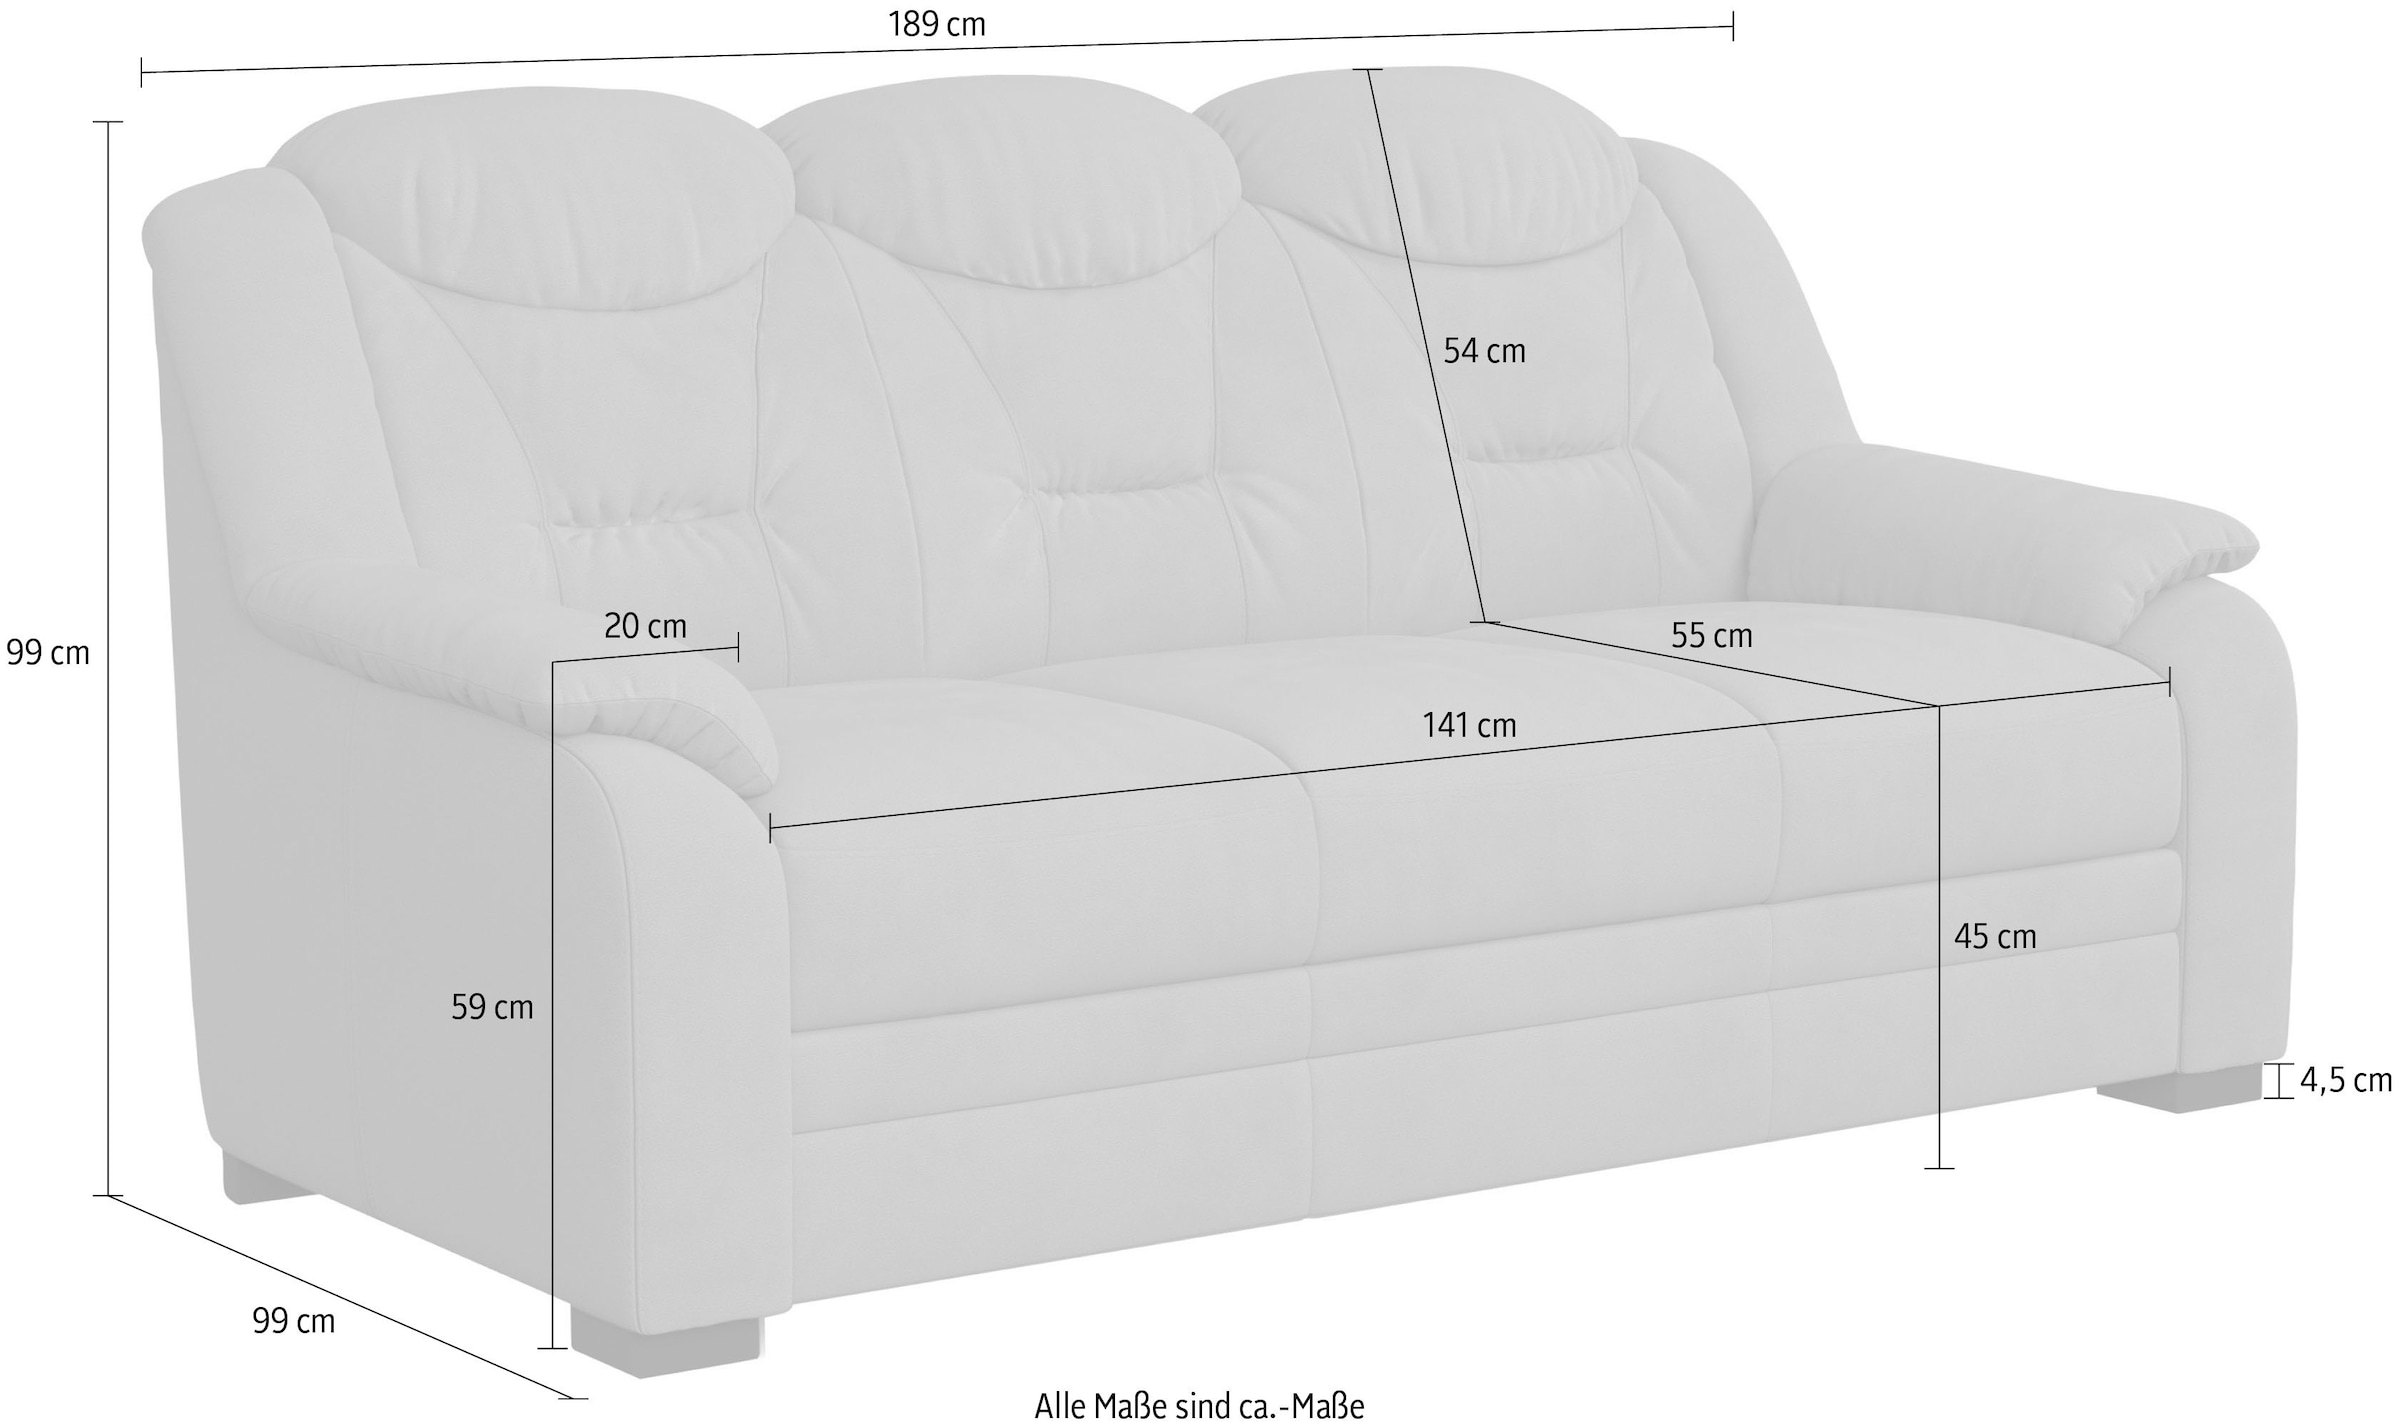 COTTA 3-Sitzer »Marcus«, Bequemer 3-Sitzer in klassischem Design mit hoher Rückenlehne